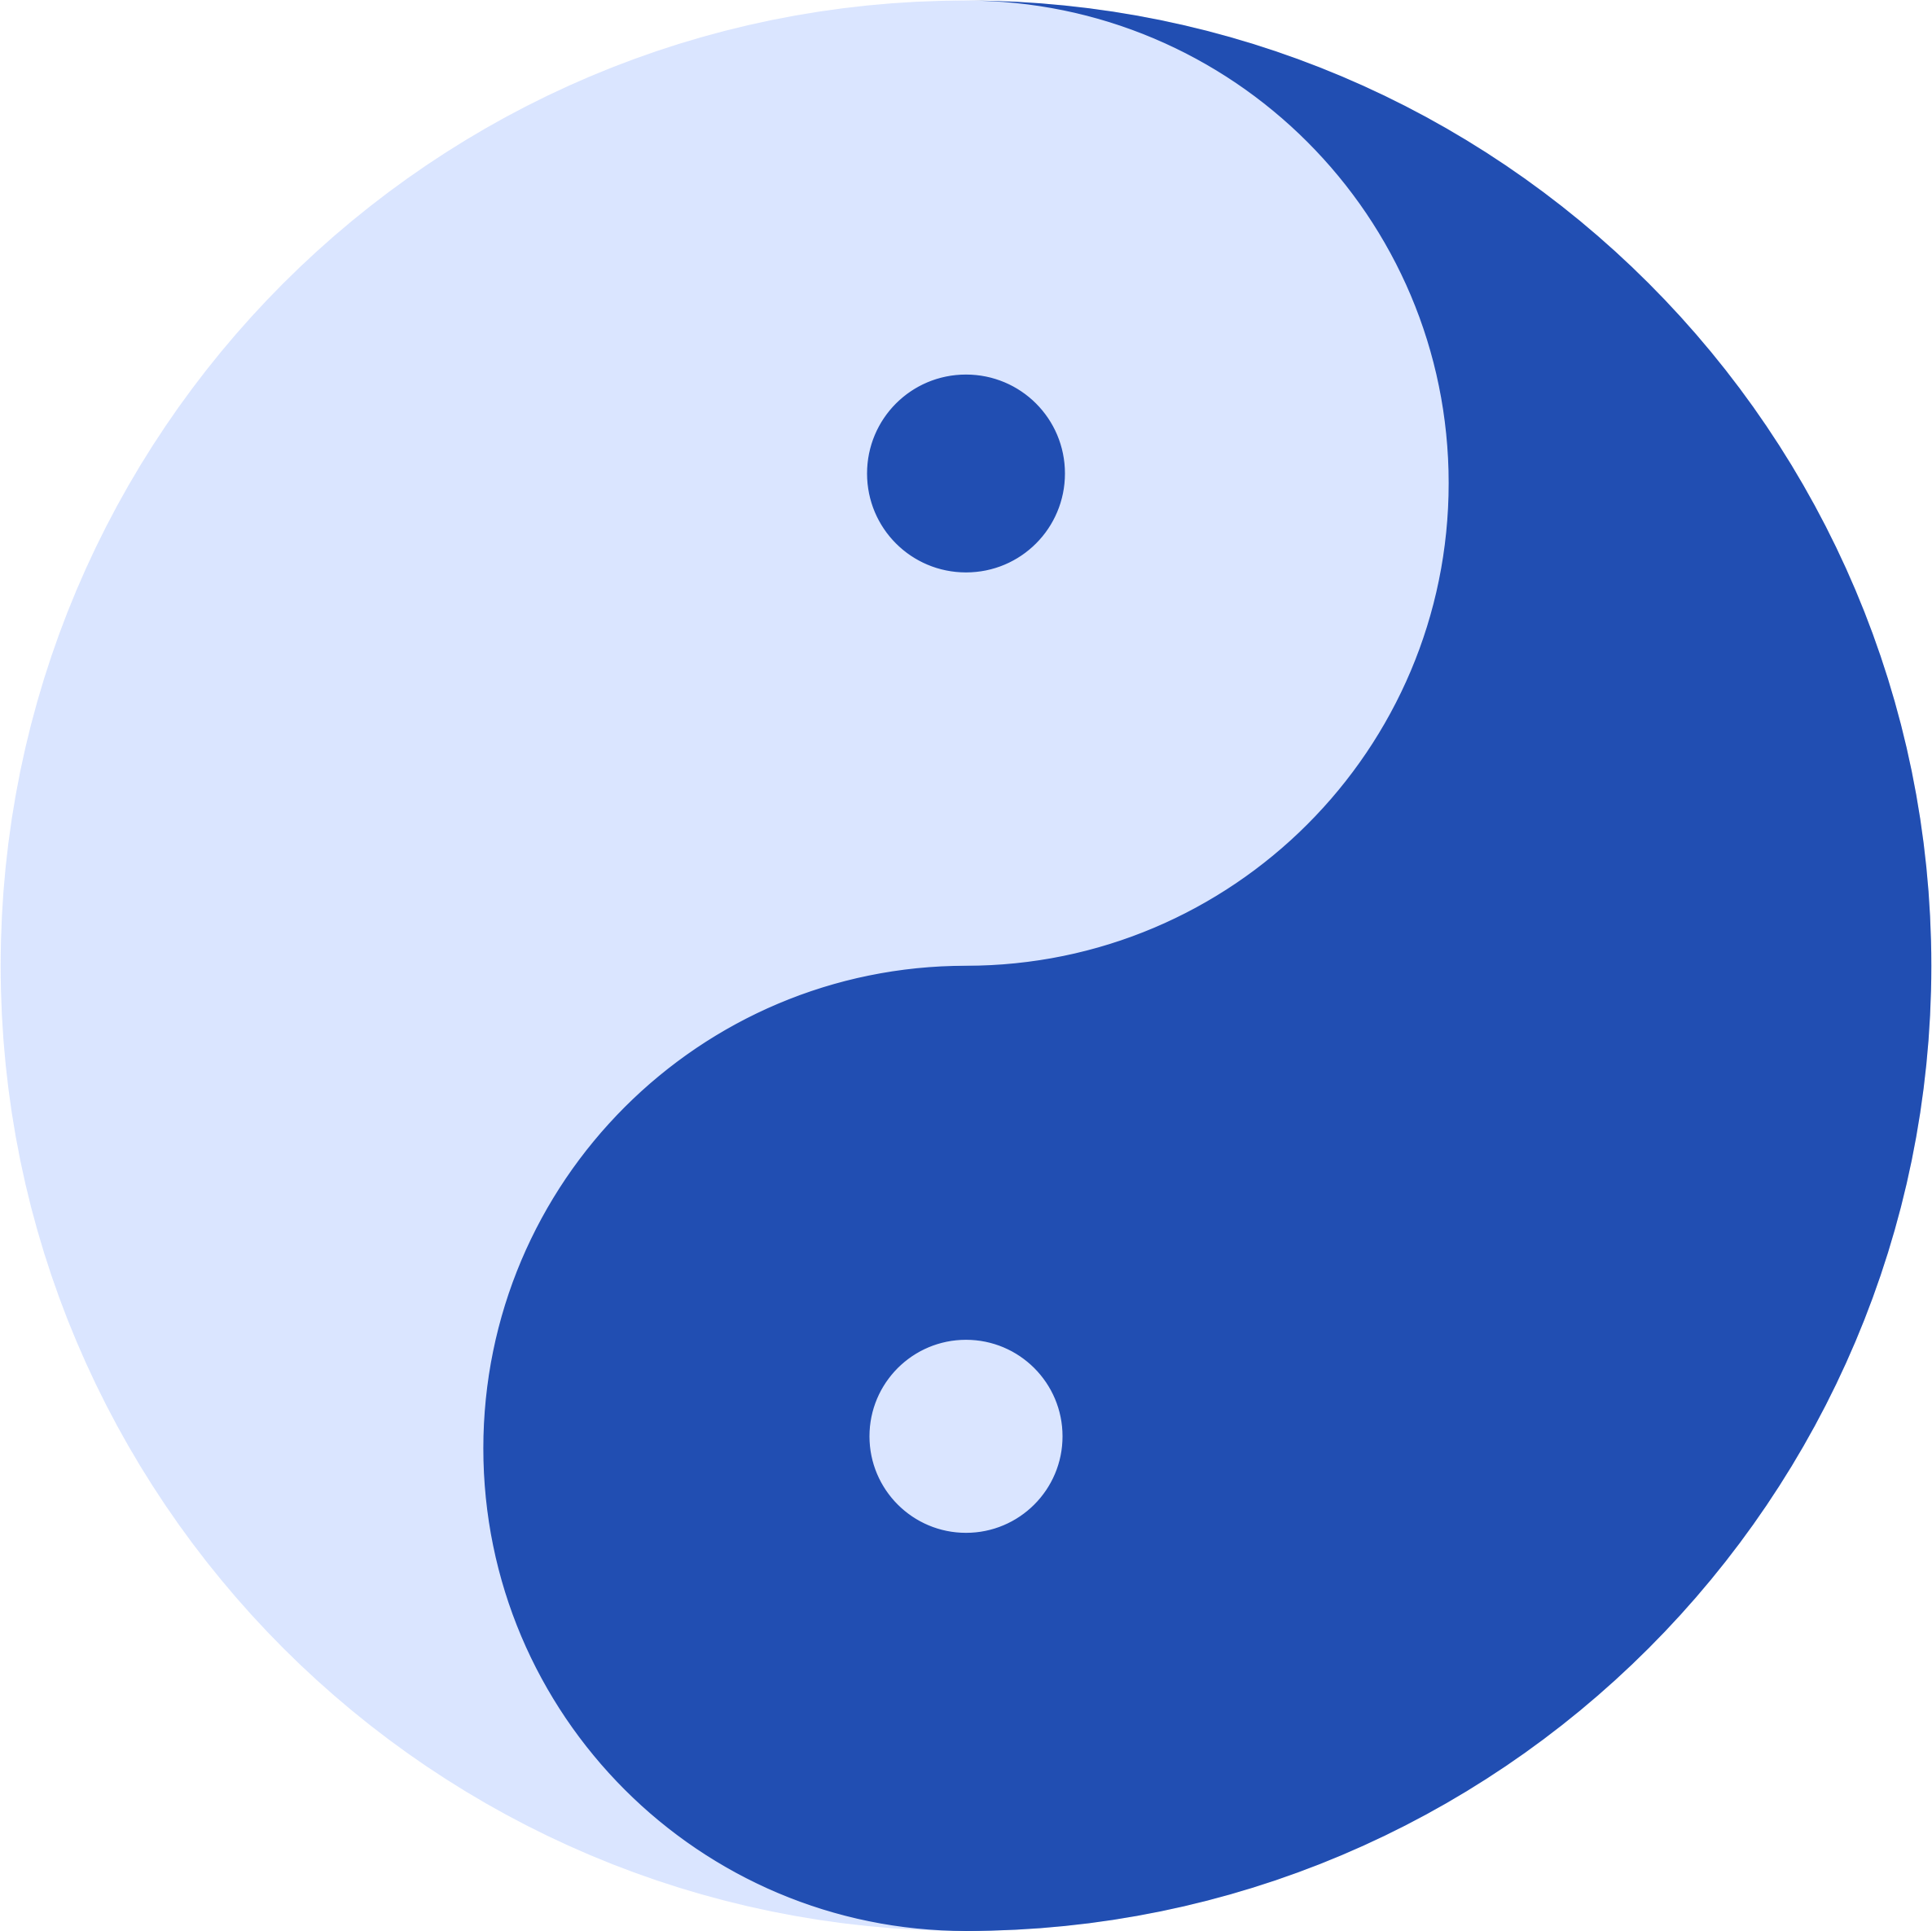 Big Image - Yin Yang In Blue (2372x2371)